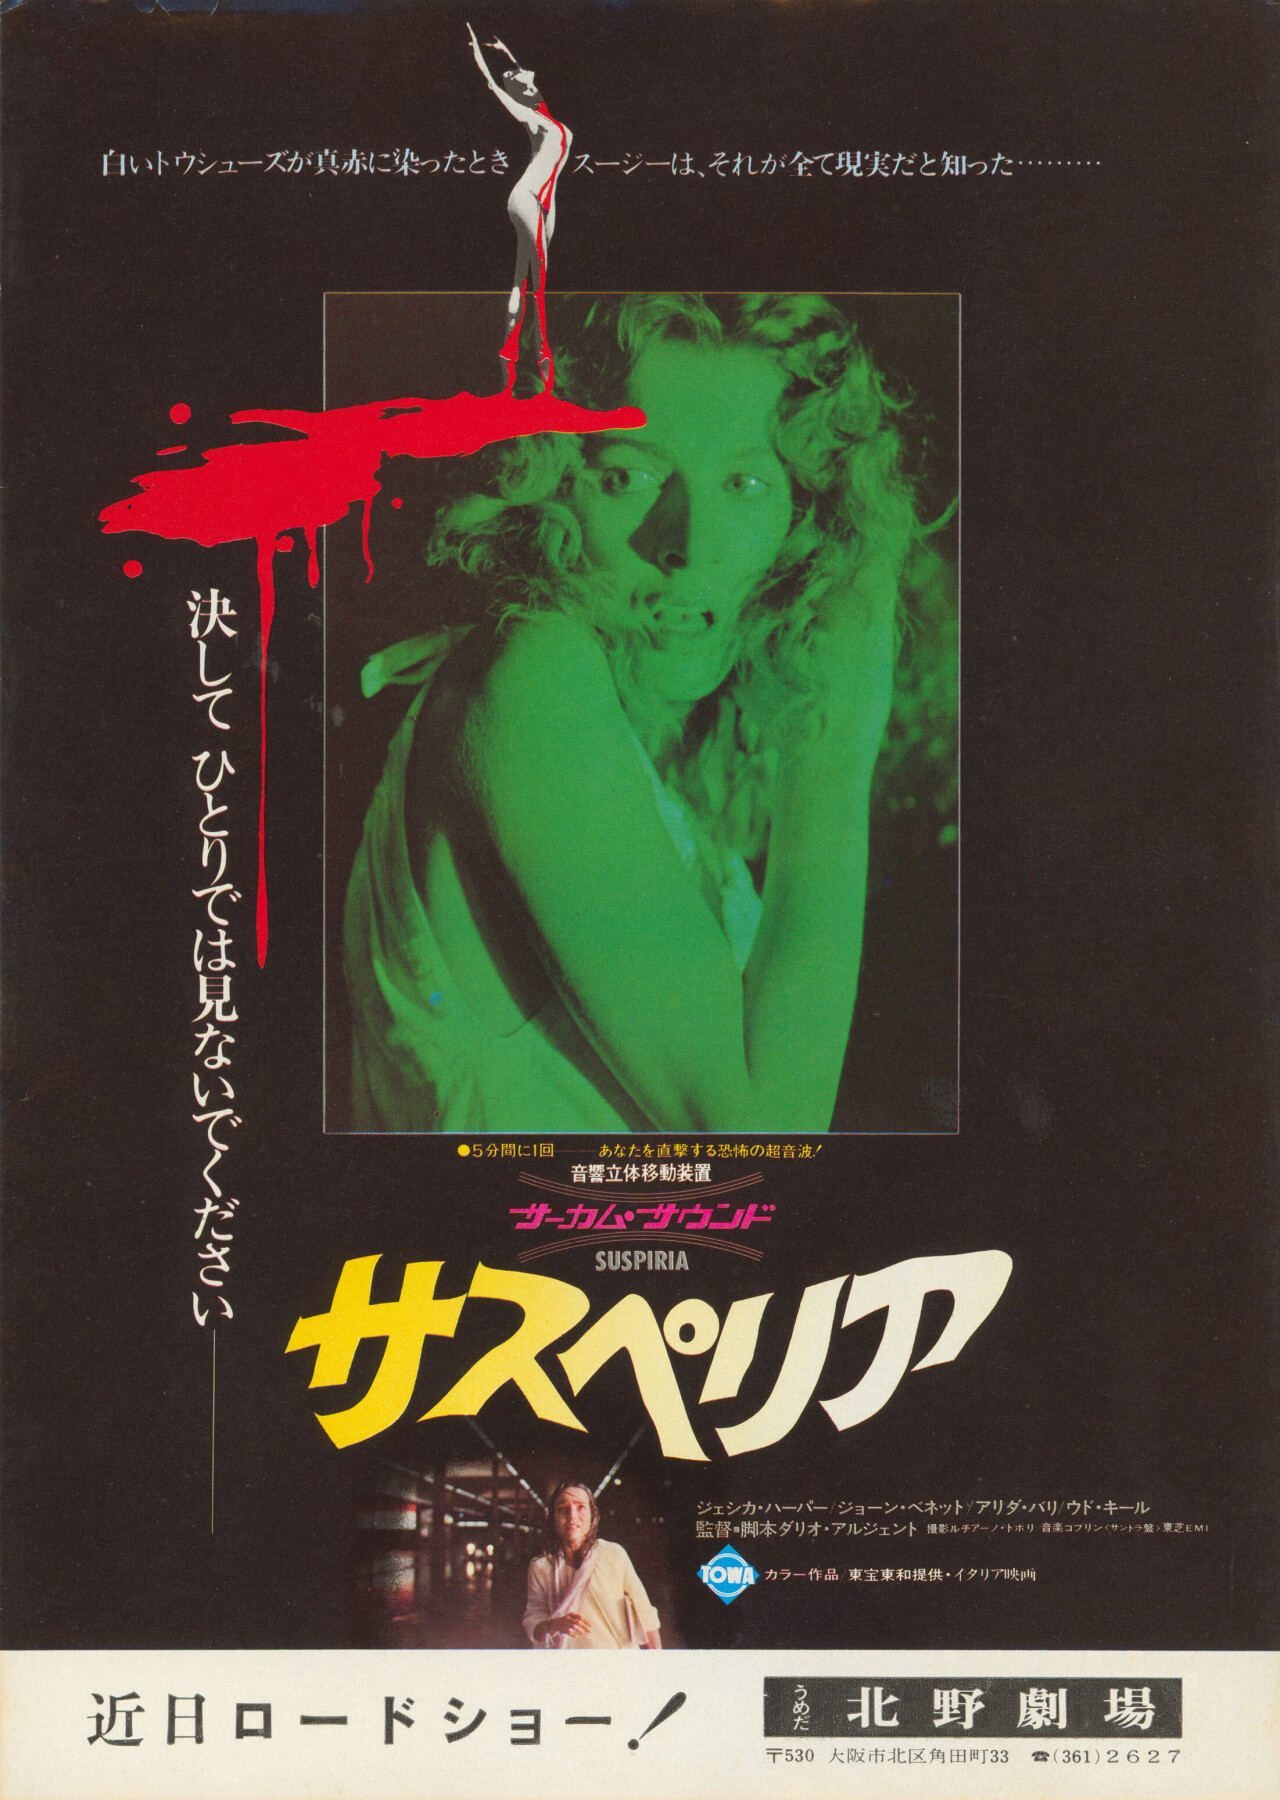 Суспирия (Suspiria, 1977), режиссёр Дарио Ардженто, японский постер к фильму (ужасы, 1977 год) (1)